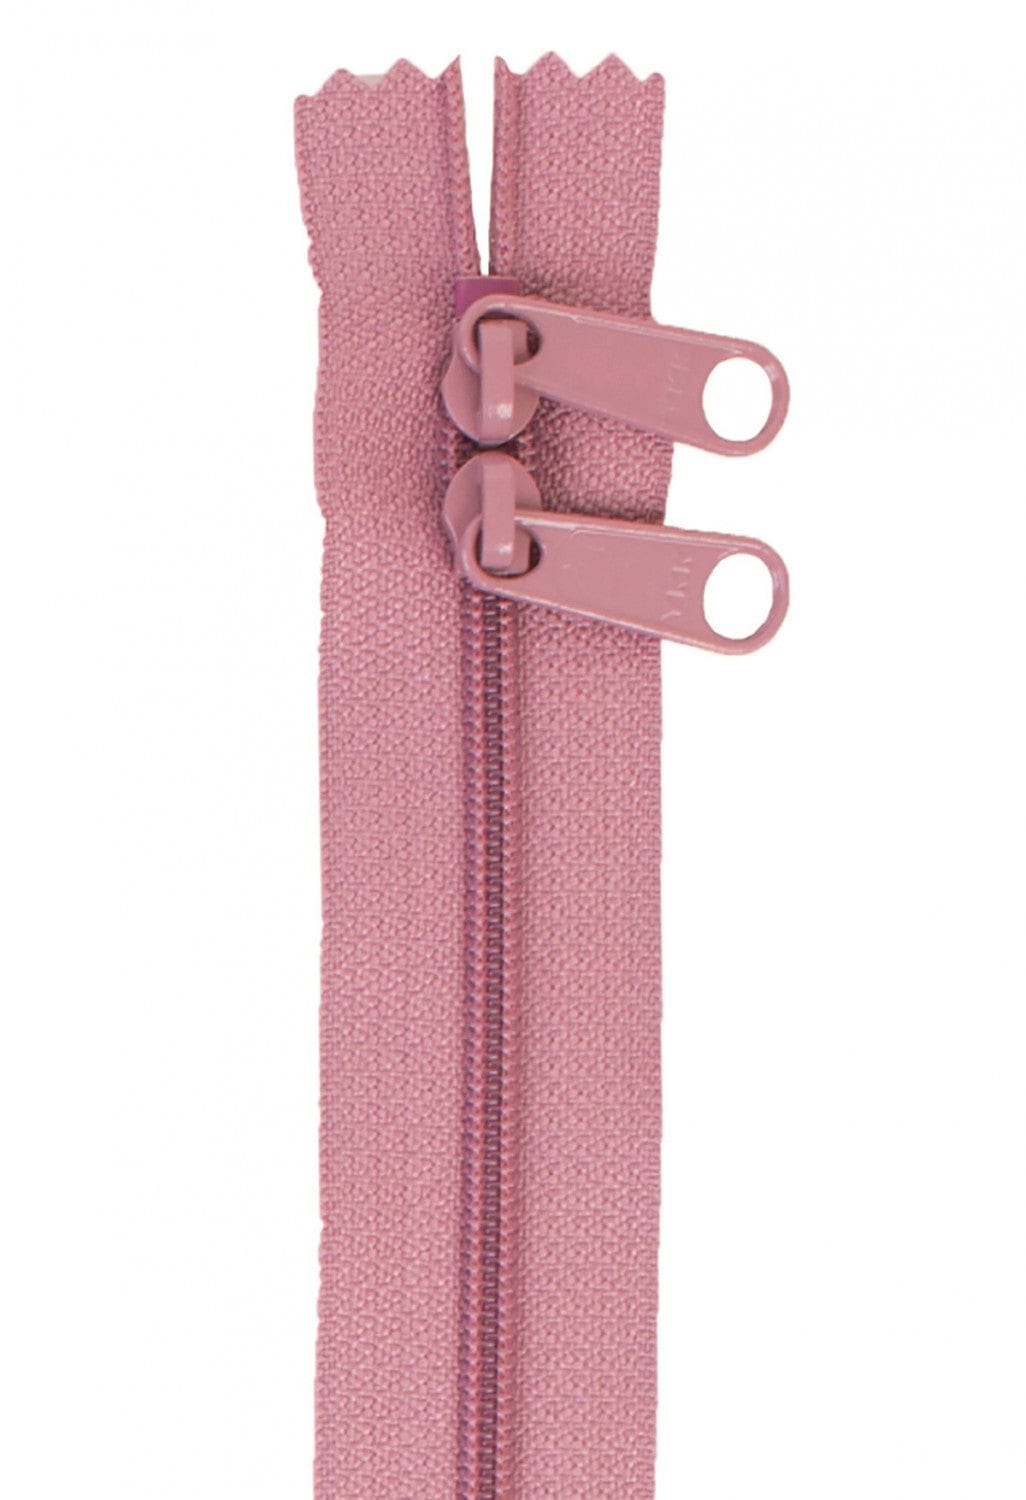 30" Long Double Slide Handbag Zipper in Dusty Rose